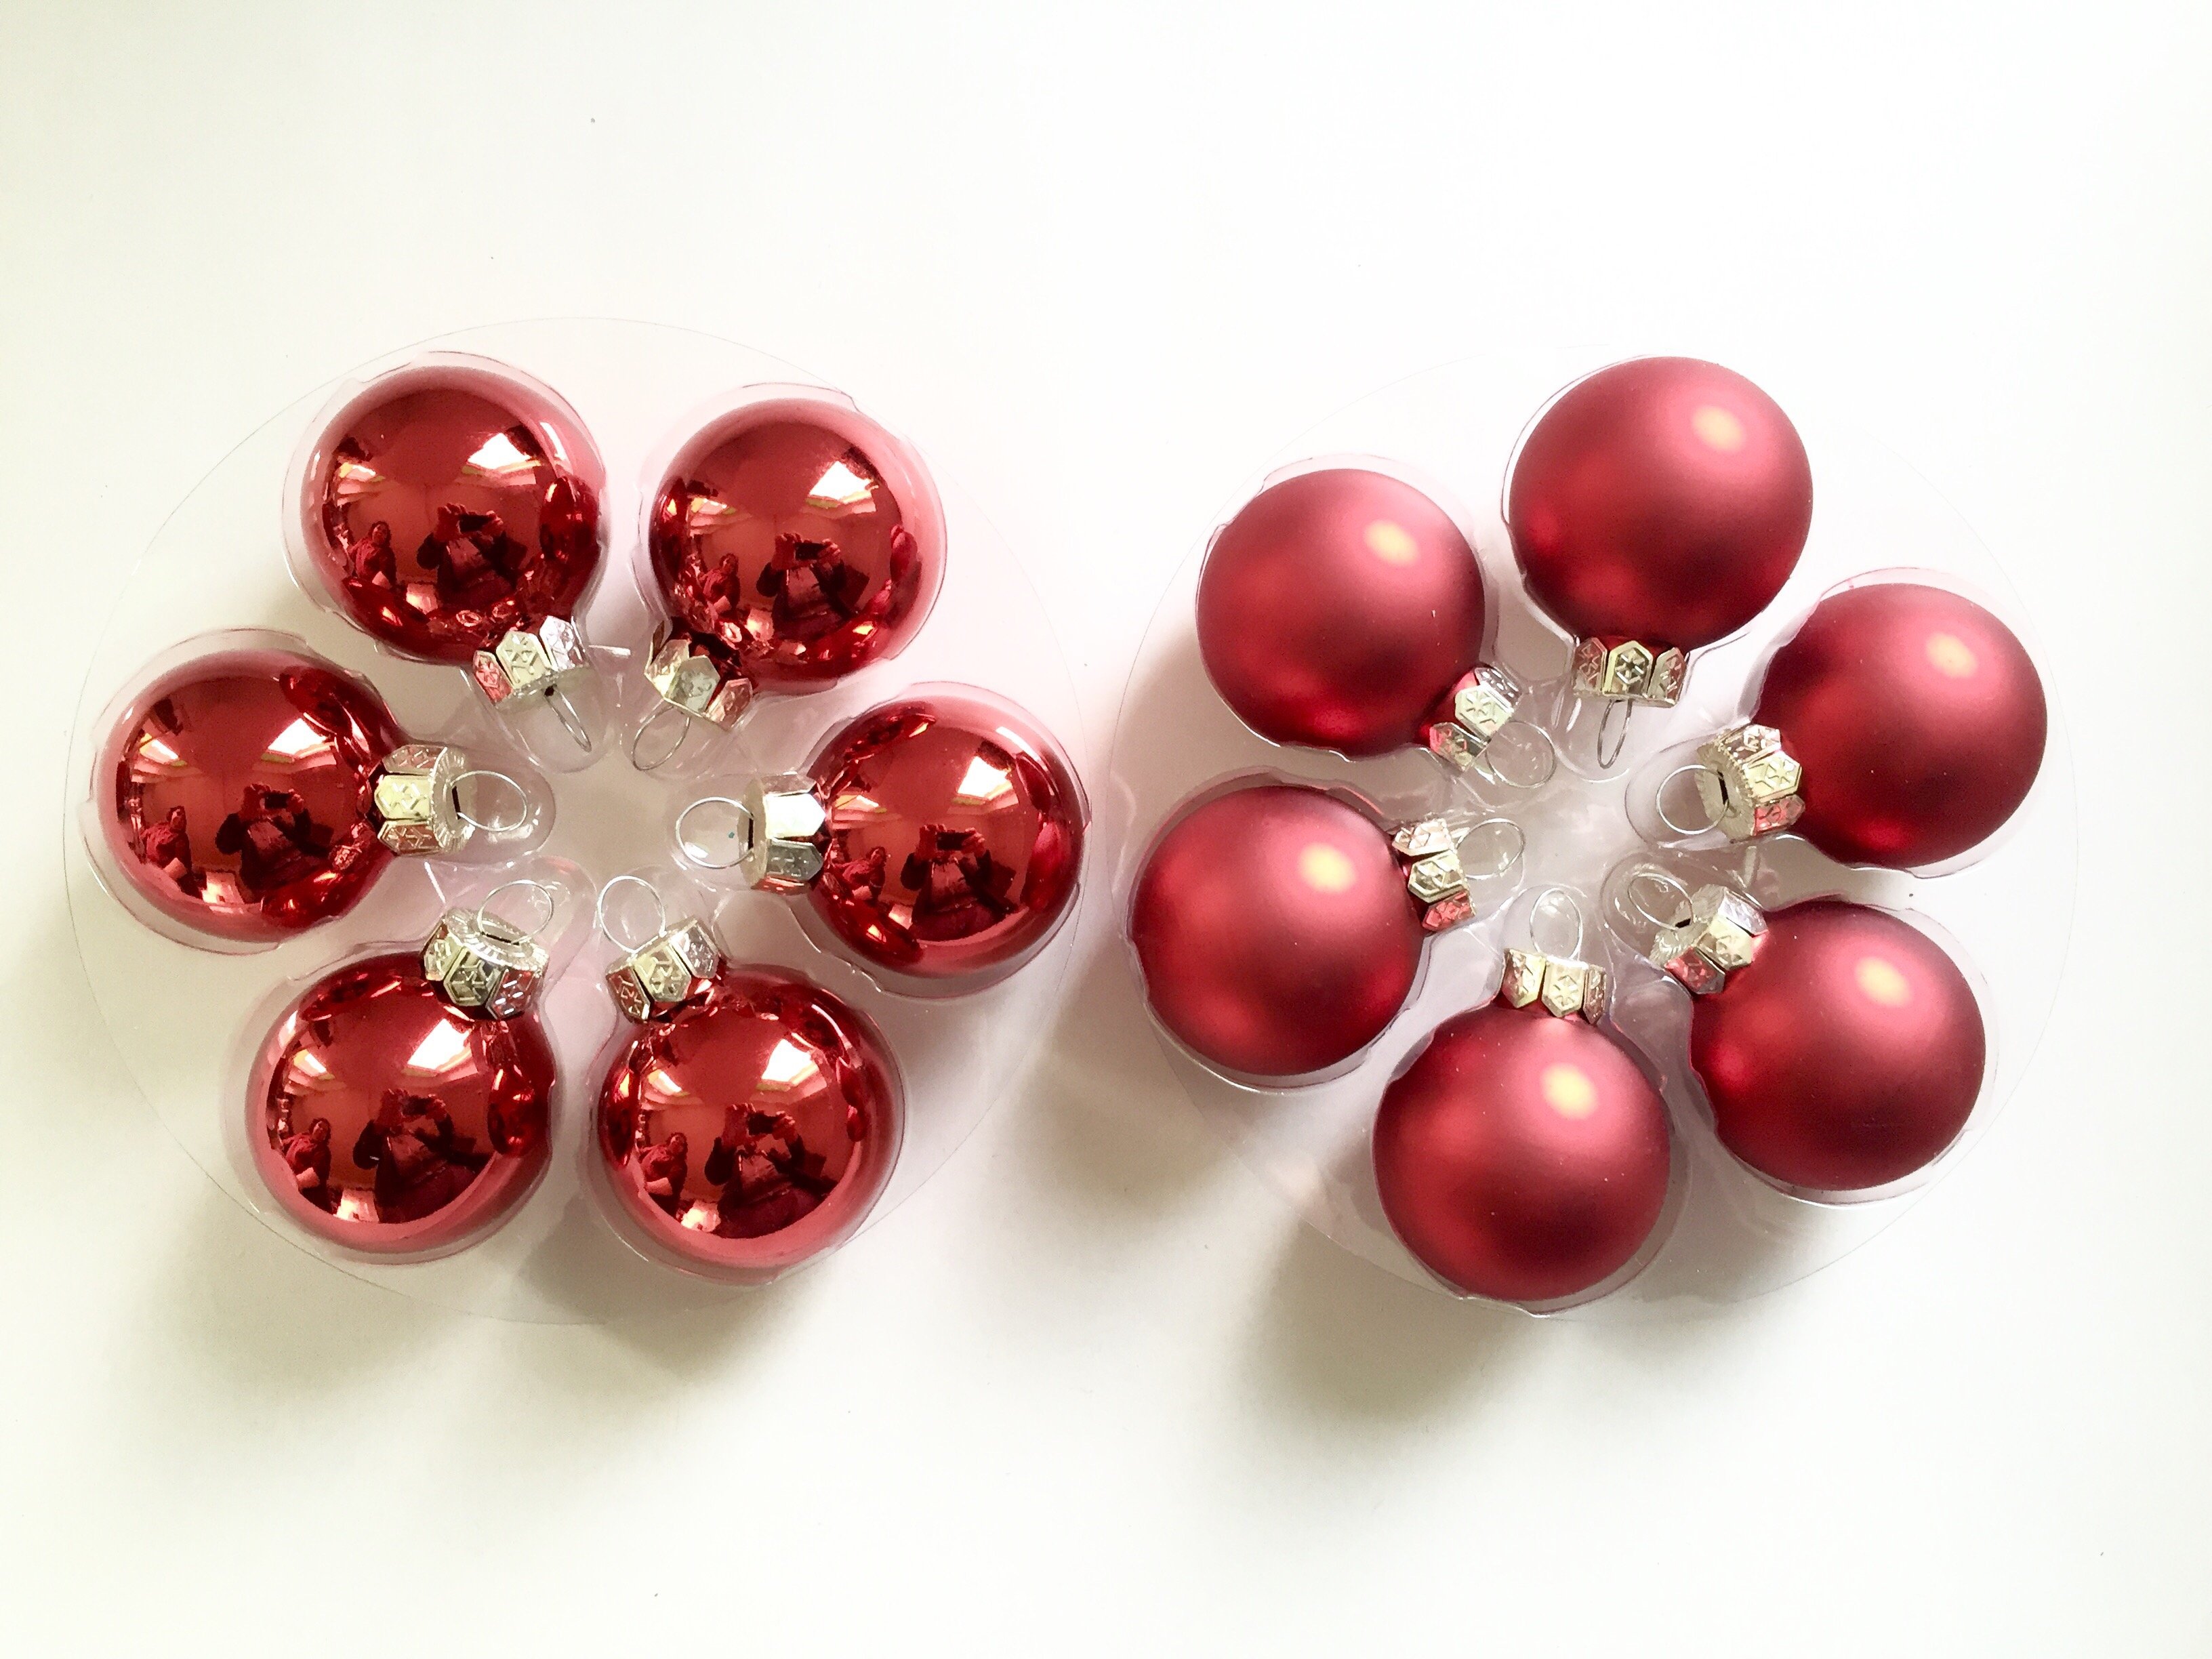 1632449869 533 DIY make an advent wreath Christmas wreath ideas - DIY: make an advent wreath, Christmas wreath ideas